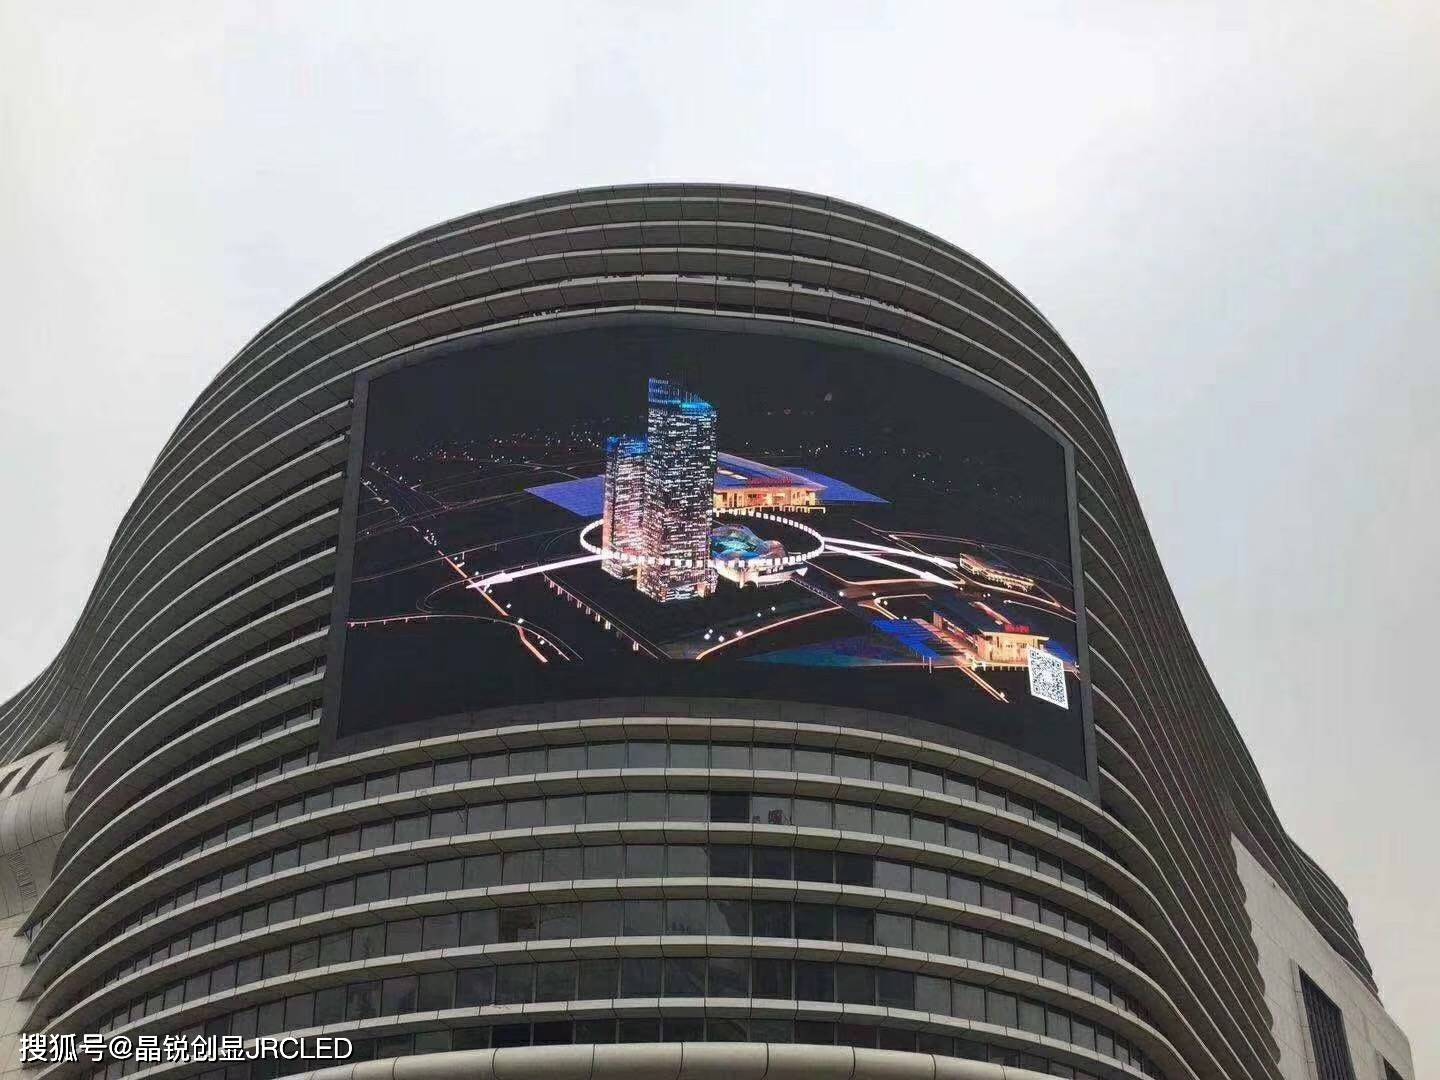 方式|户外P16全彩LED显示屏装扮各大城市的高楼大厦。